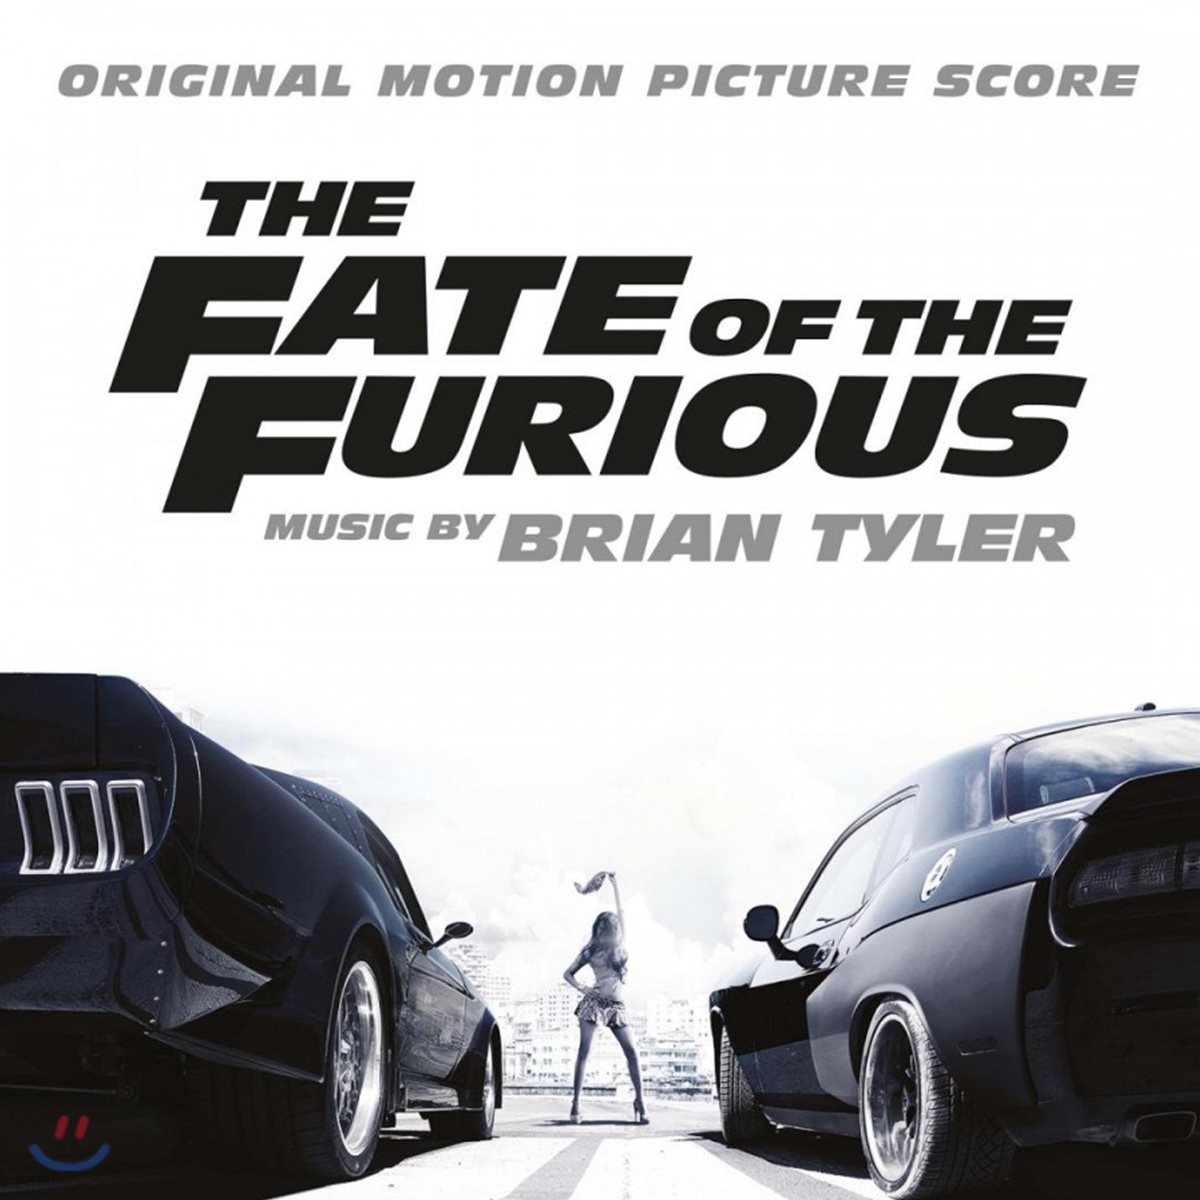 분노의 질주 : 더 익스트림 8 영화음악 (The Fate Of The Furious OST by Brian Tyler 브라이언 타일러) [2 LP]